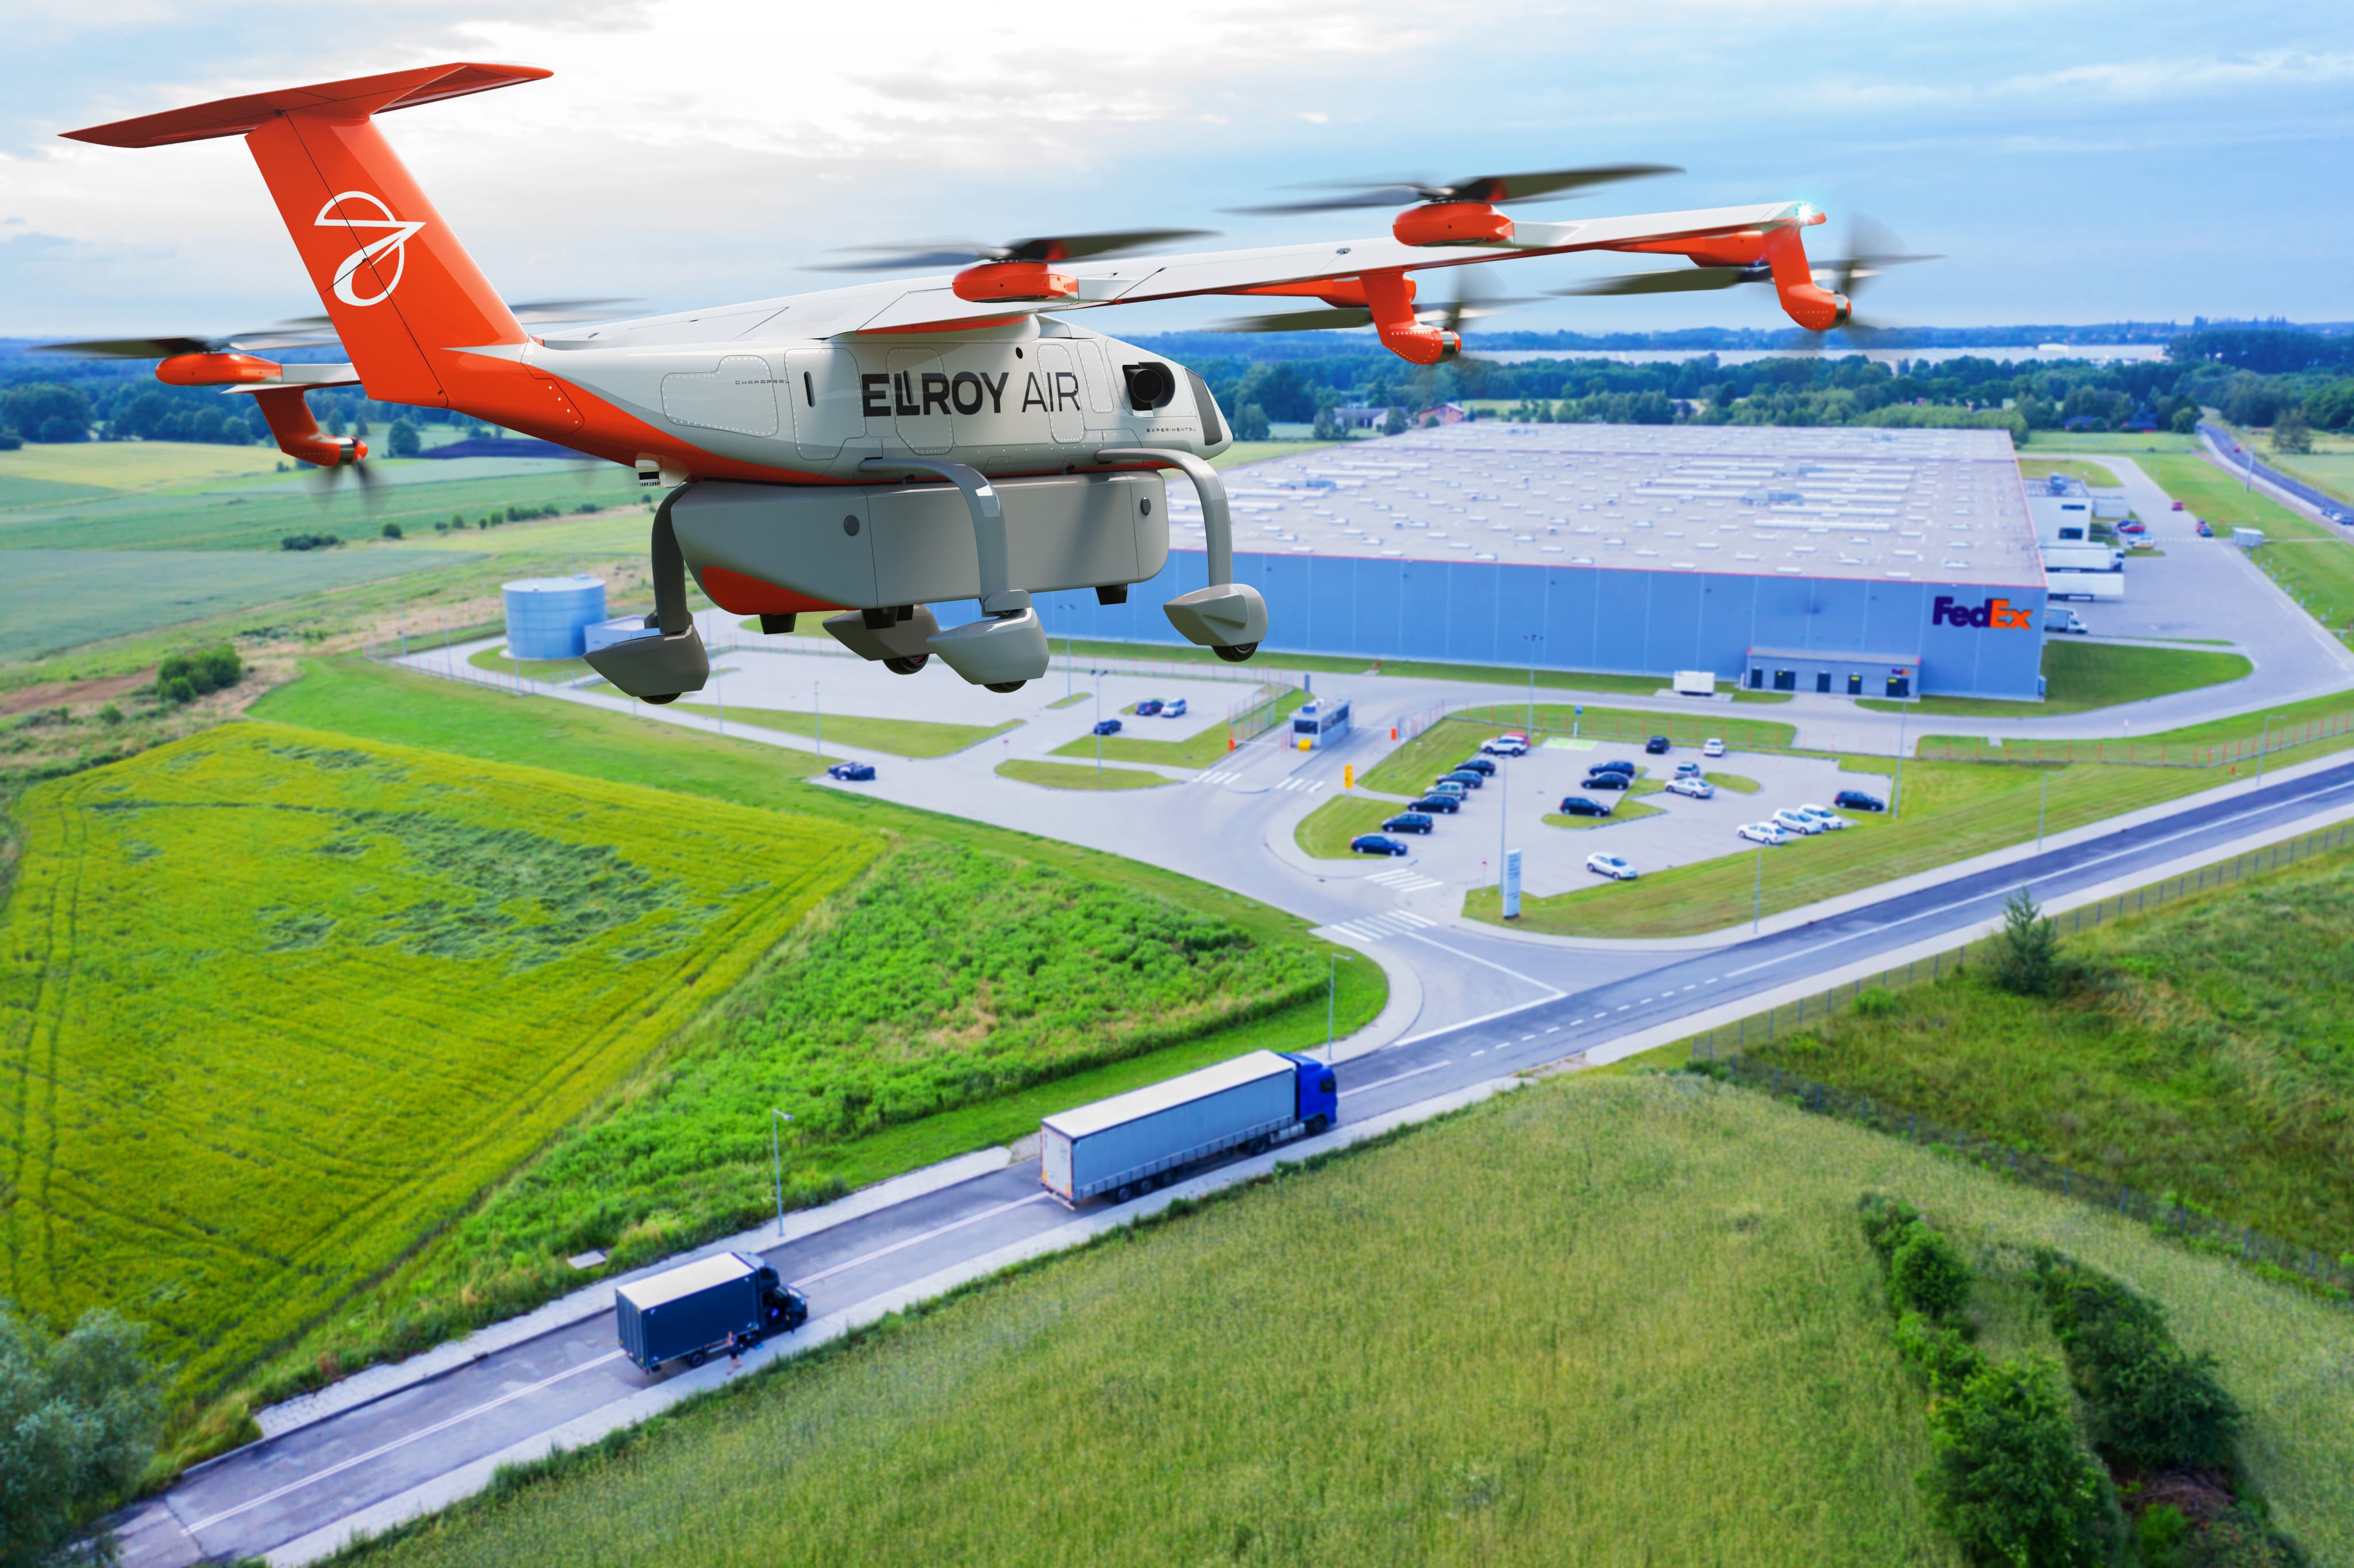 FedEx will test autonomous cargo flights next year